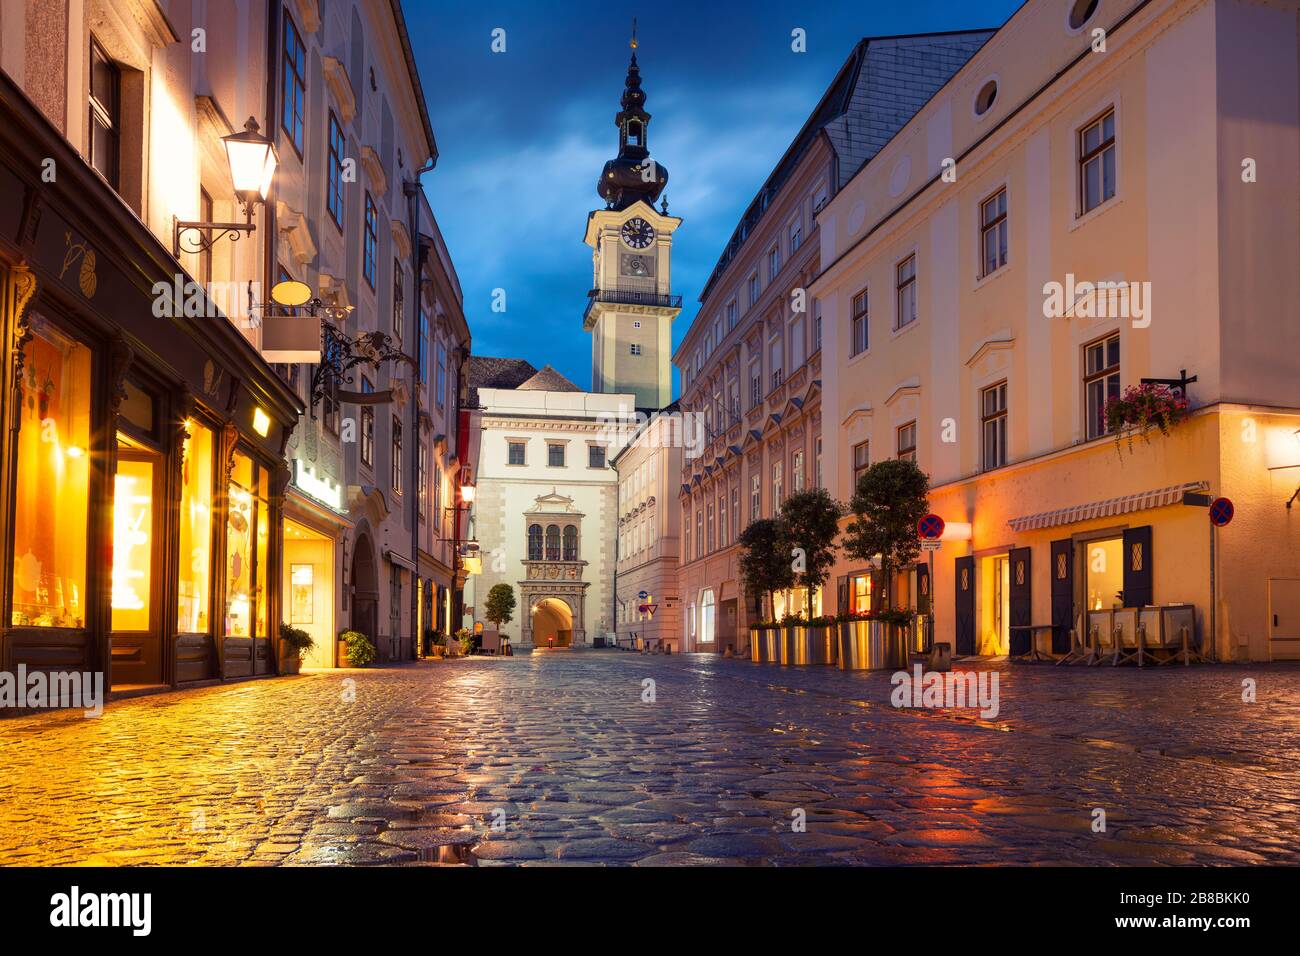 Linz, Autriche. Image cityscape de la vieille ville de Linz, Autriche pendant une heure bleu crépuscule avec reflet des lumières de la ville Banque D'Images